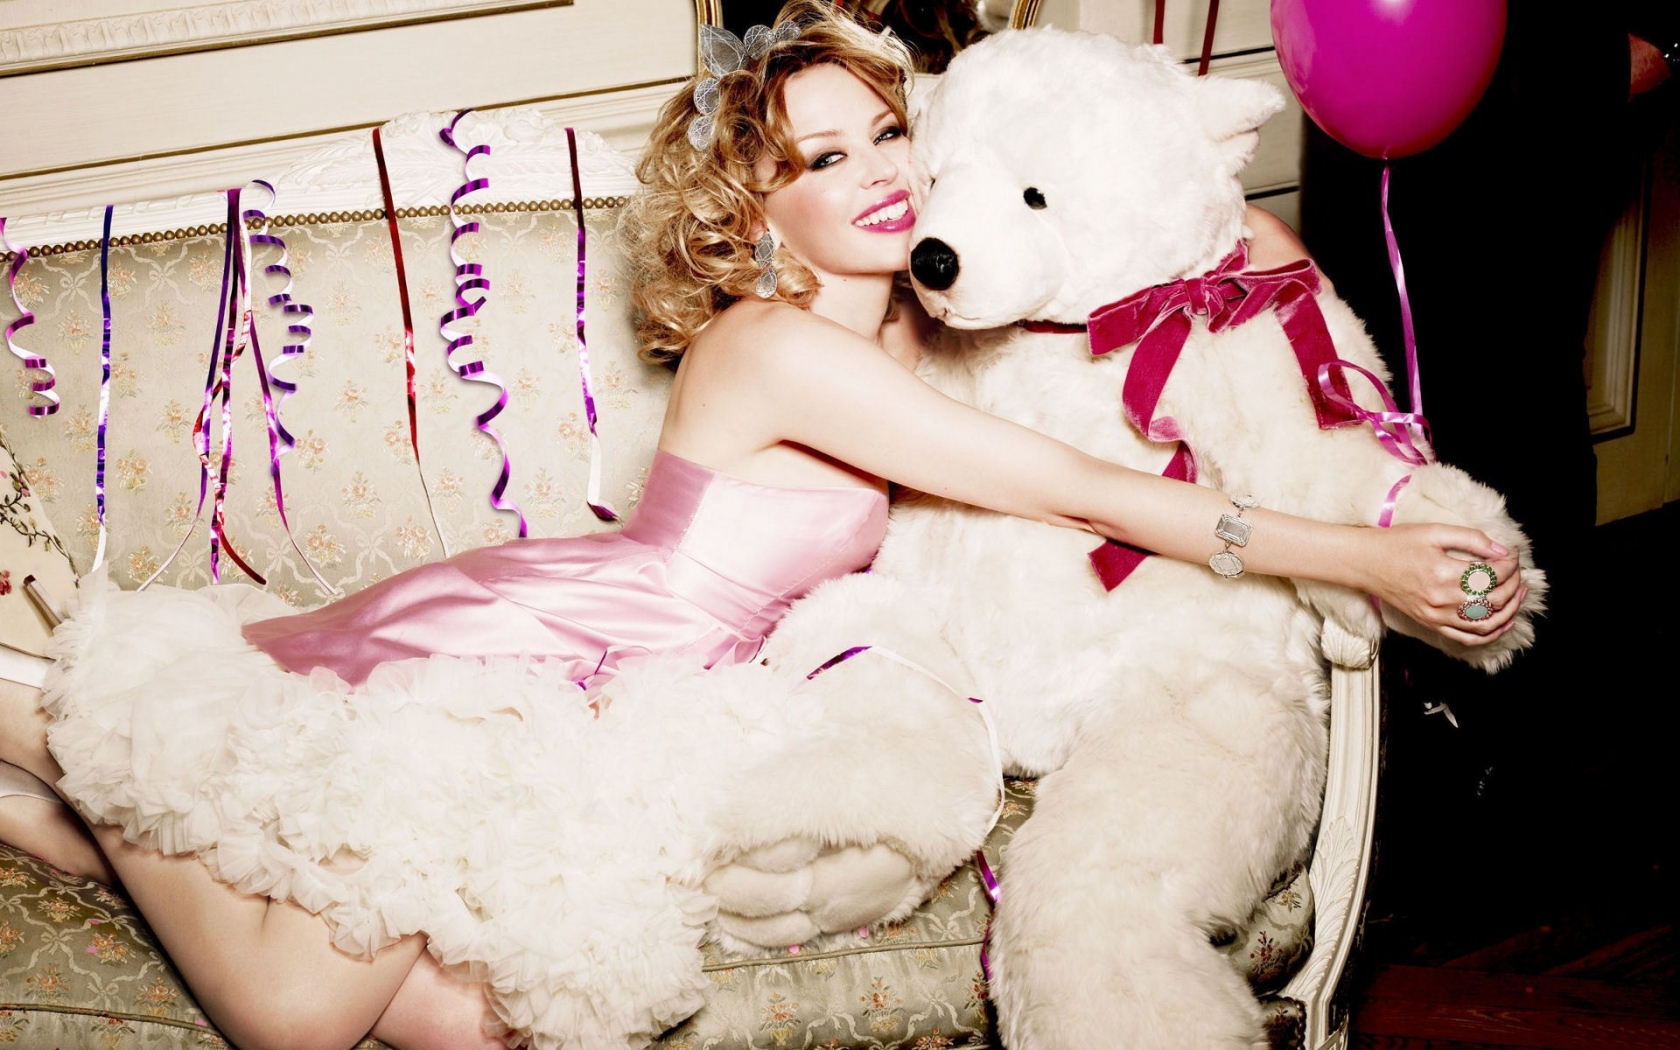 Kylie Minogue Bear Love for 1680 x 1050 widescreen resolution